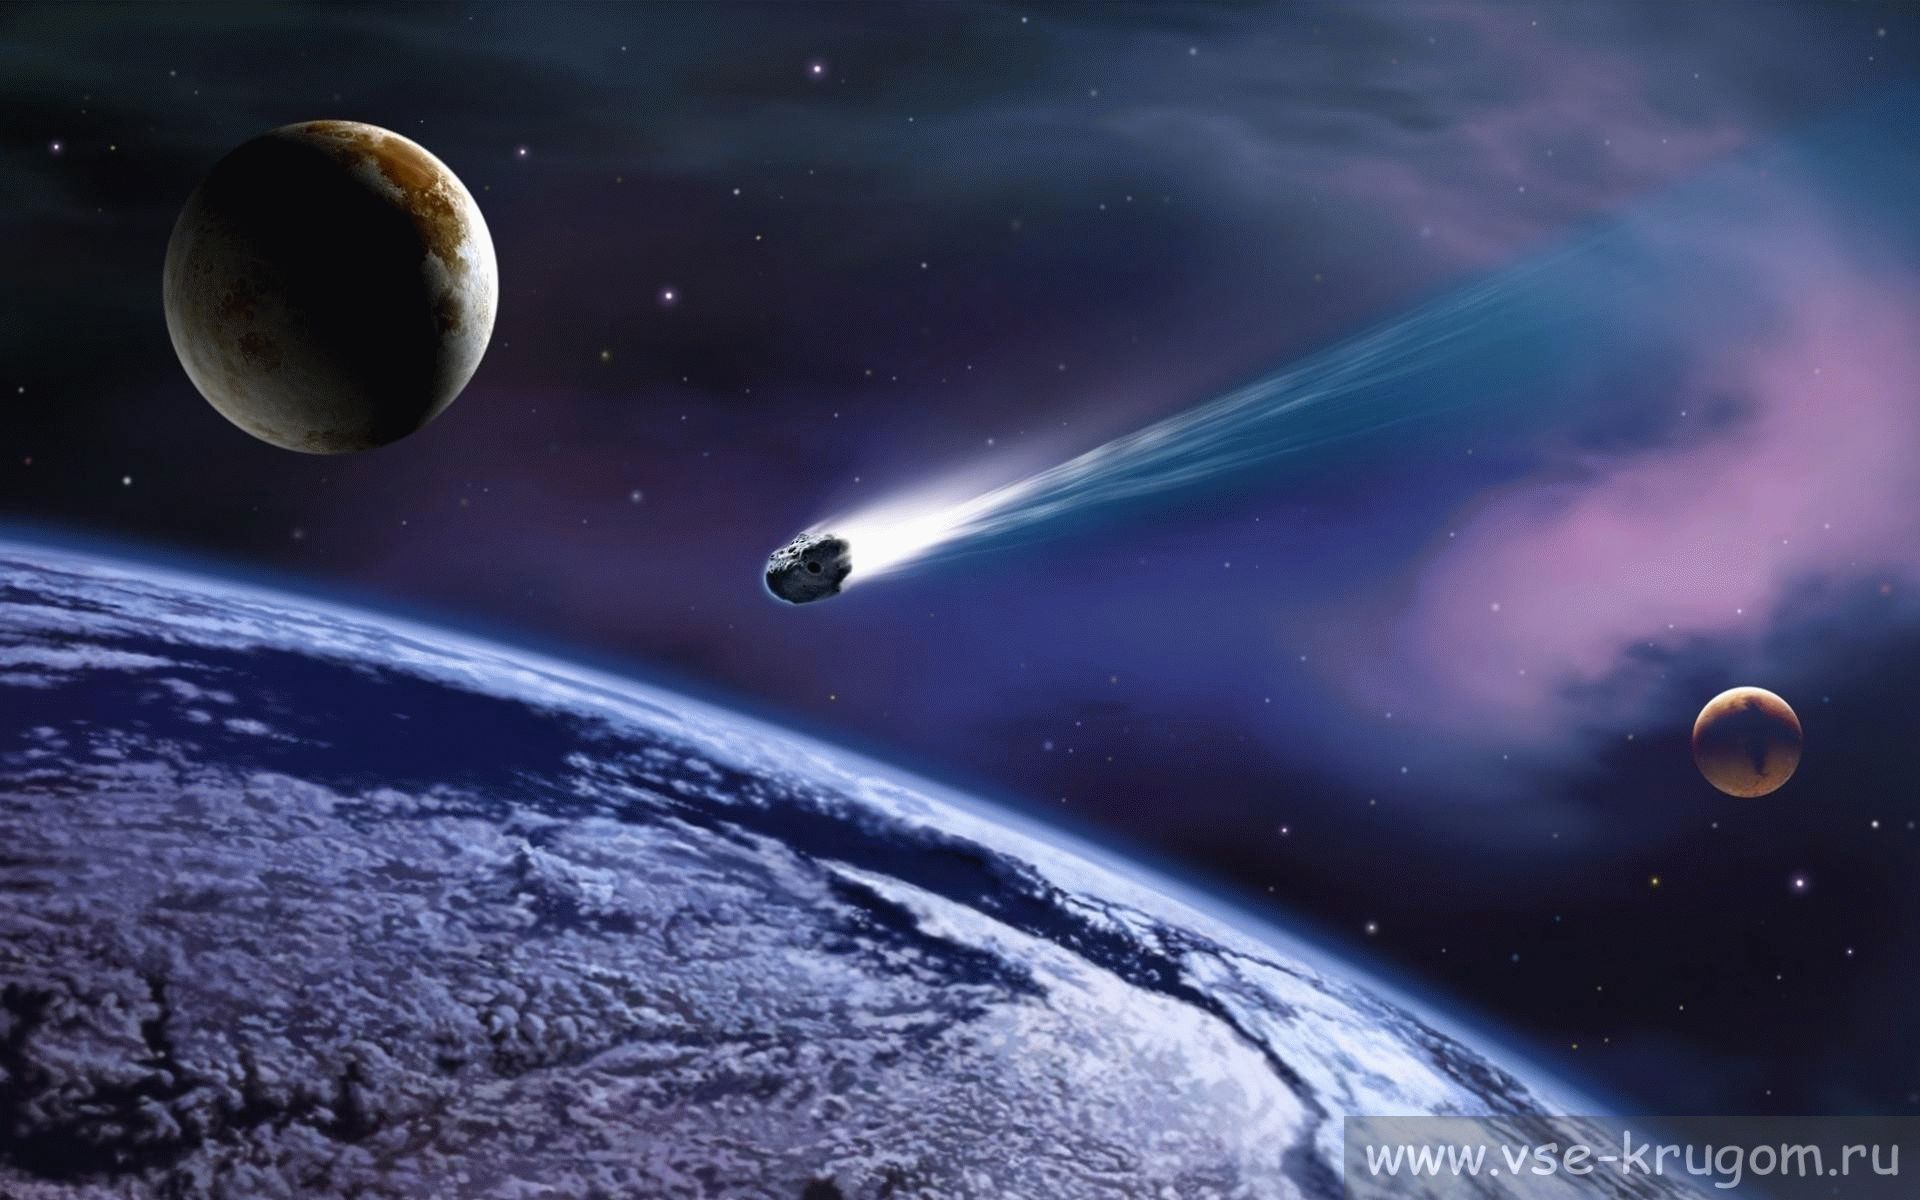 Asteroide 2013 TX68 in arrivo il 5 marzo. La NASA: “Non sappiamo quanto si avvicinerà”